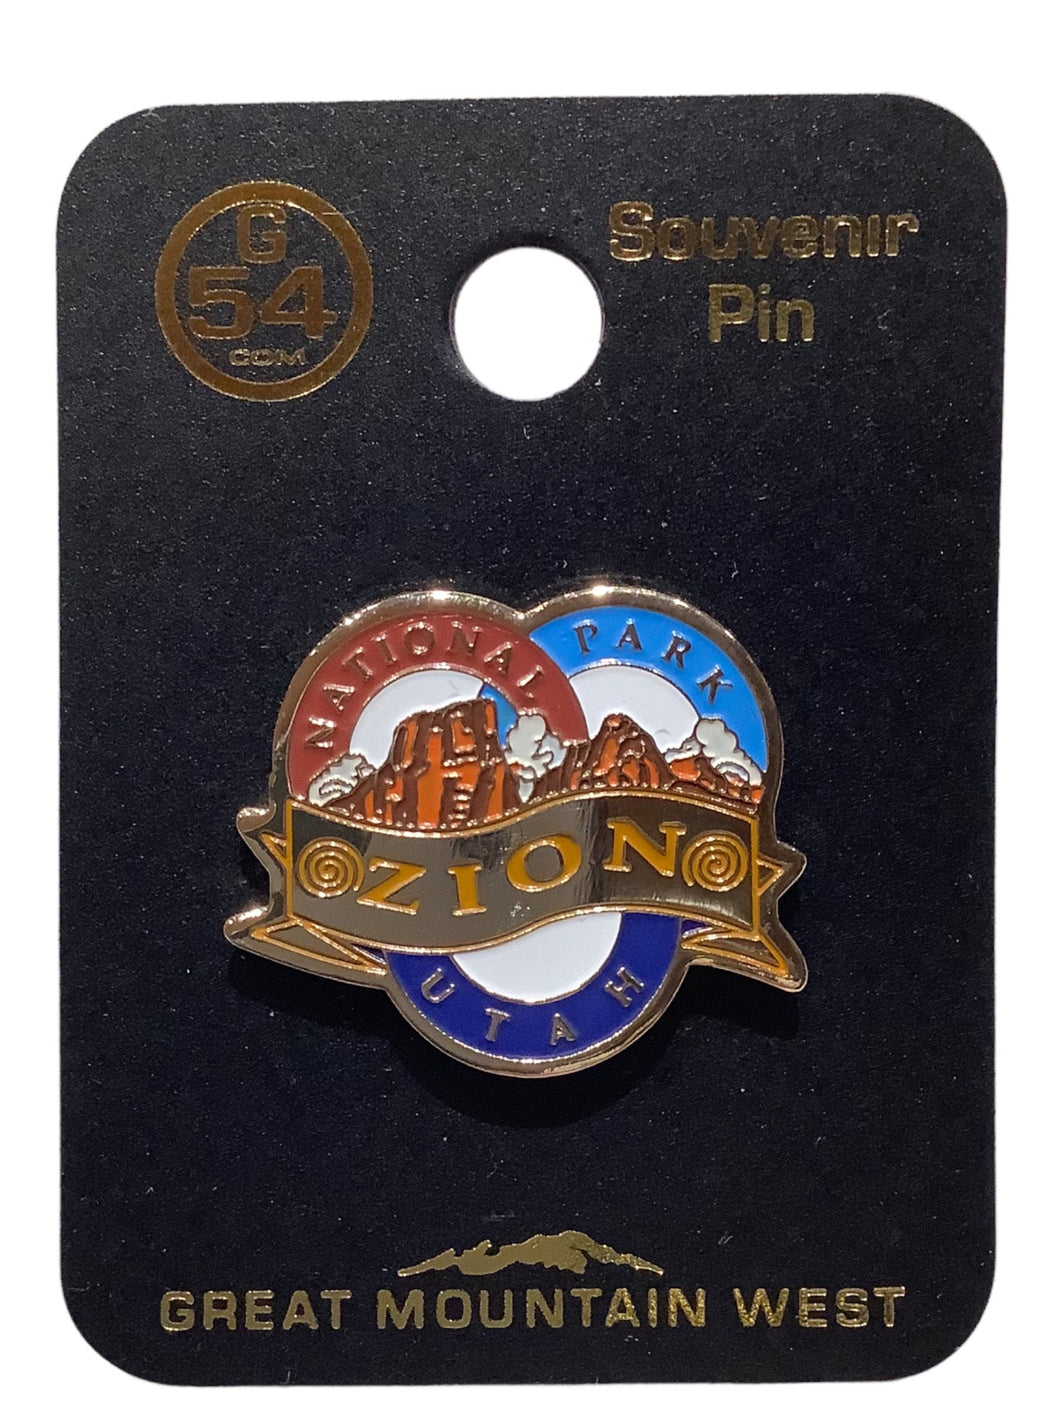 Zion Tri-Circle Souvenir Pin